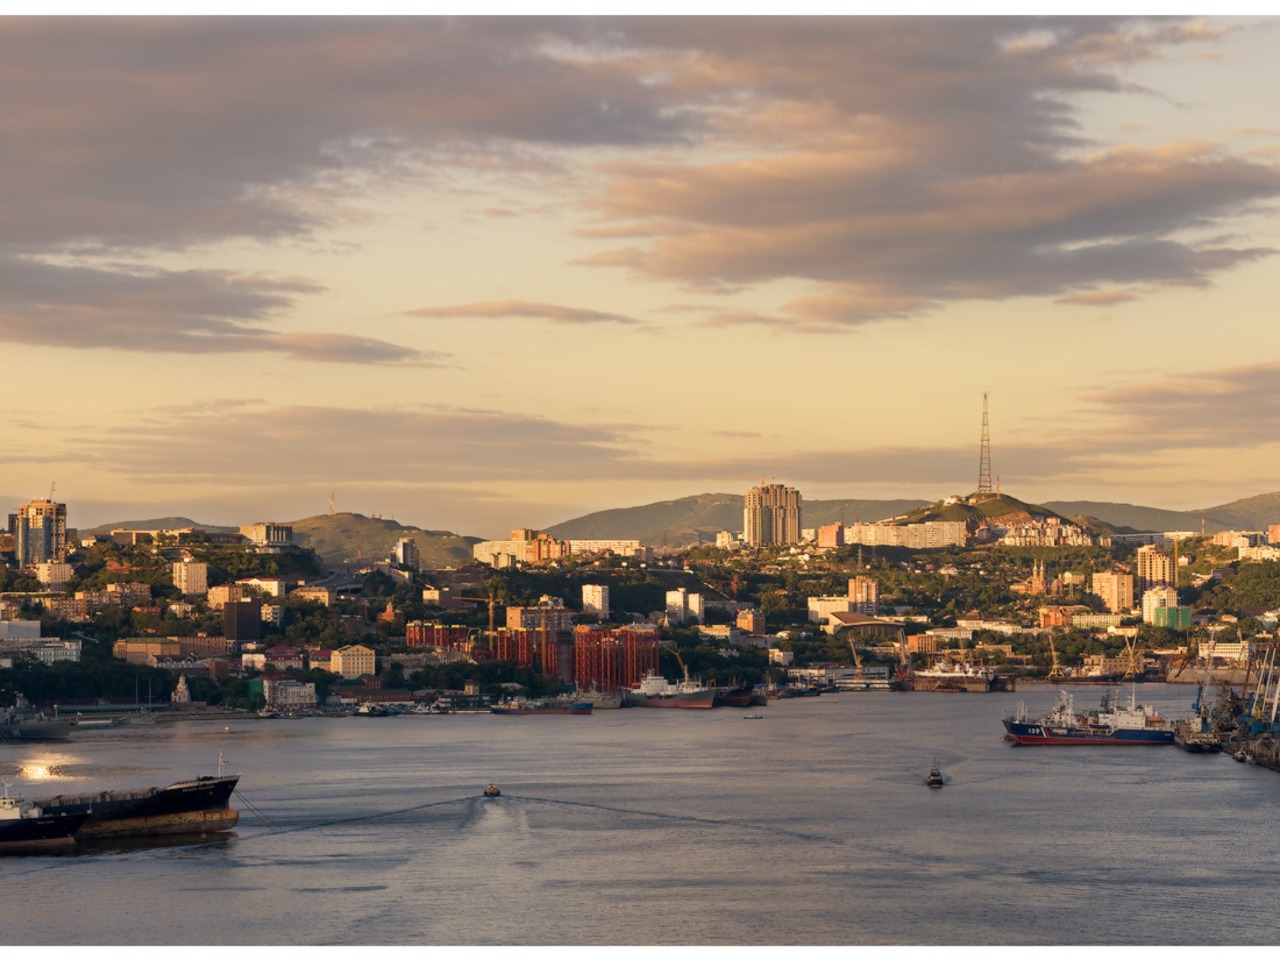 "На краешке земли": Владивосток и остров Русский  | Цена 12500₽, отзывы, описание экскурсии